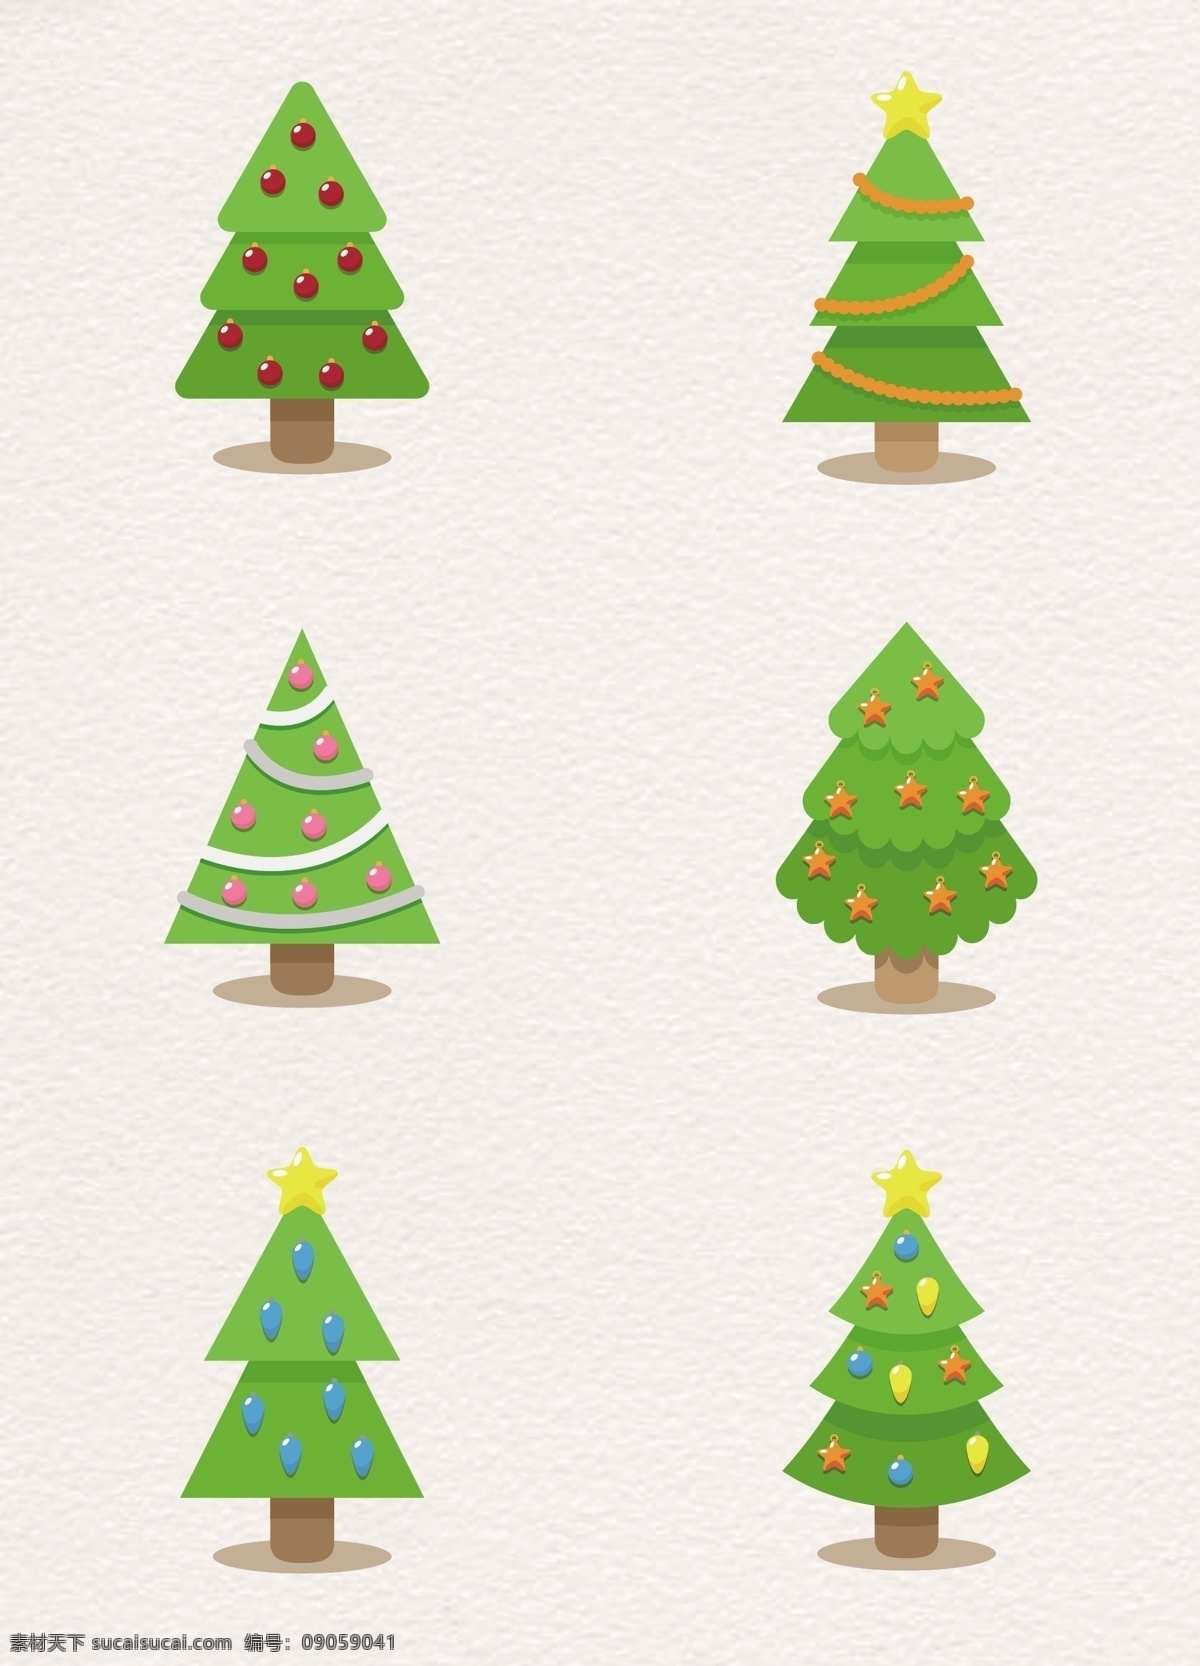 小 清新 组 圣诞节 圣诞树 元素 小清新 绿色 植物 矢量 卡通 可爱设计